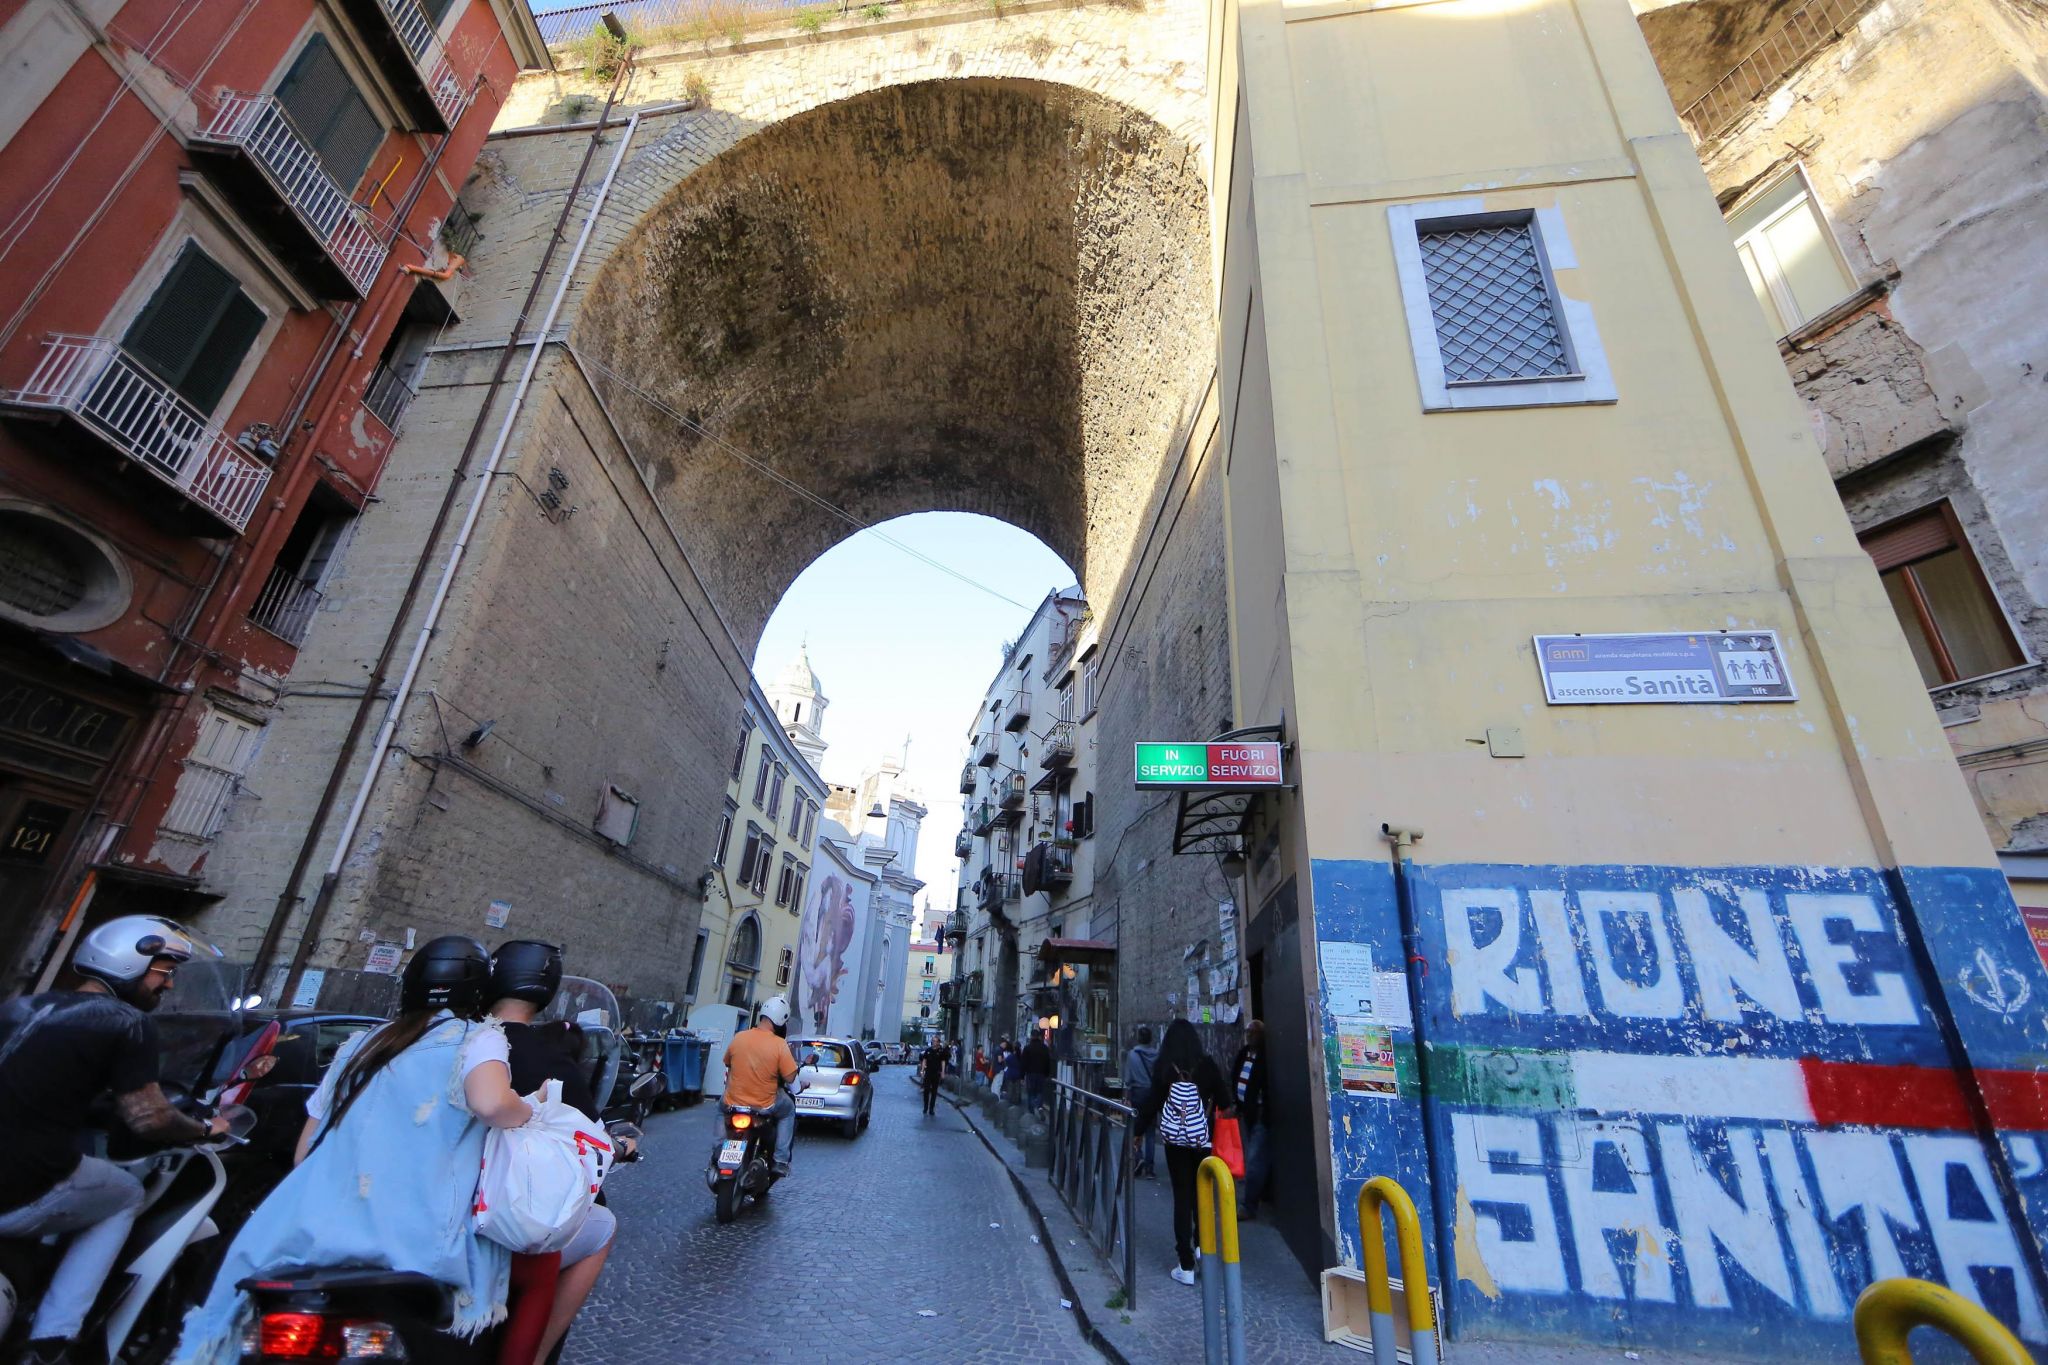 Napoli, al rione Sanità i carabinieri arrestano un 16enne per stalking alla ex e per lesioni alla madre di lei